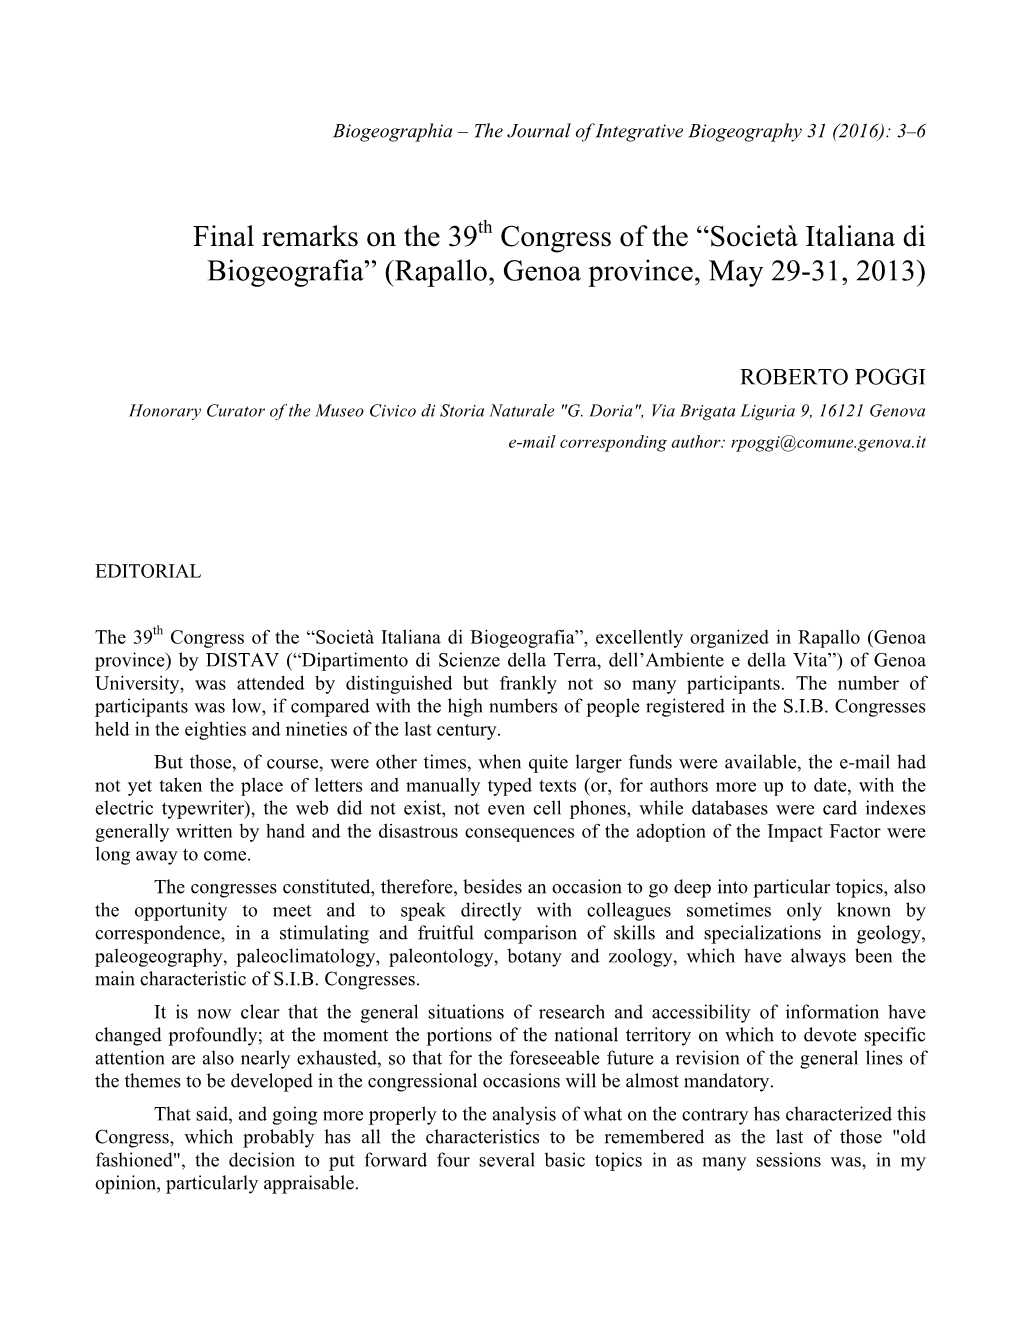 Final Remarks on the 39Th Congress of the “Società Italiana Di Biogeografia” (Rapallo, Genoa Province, May 29-31, 2013)